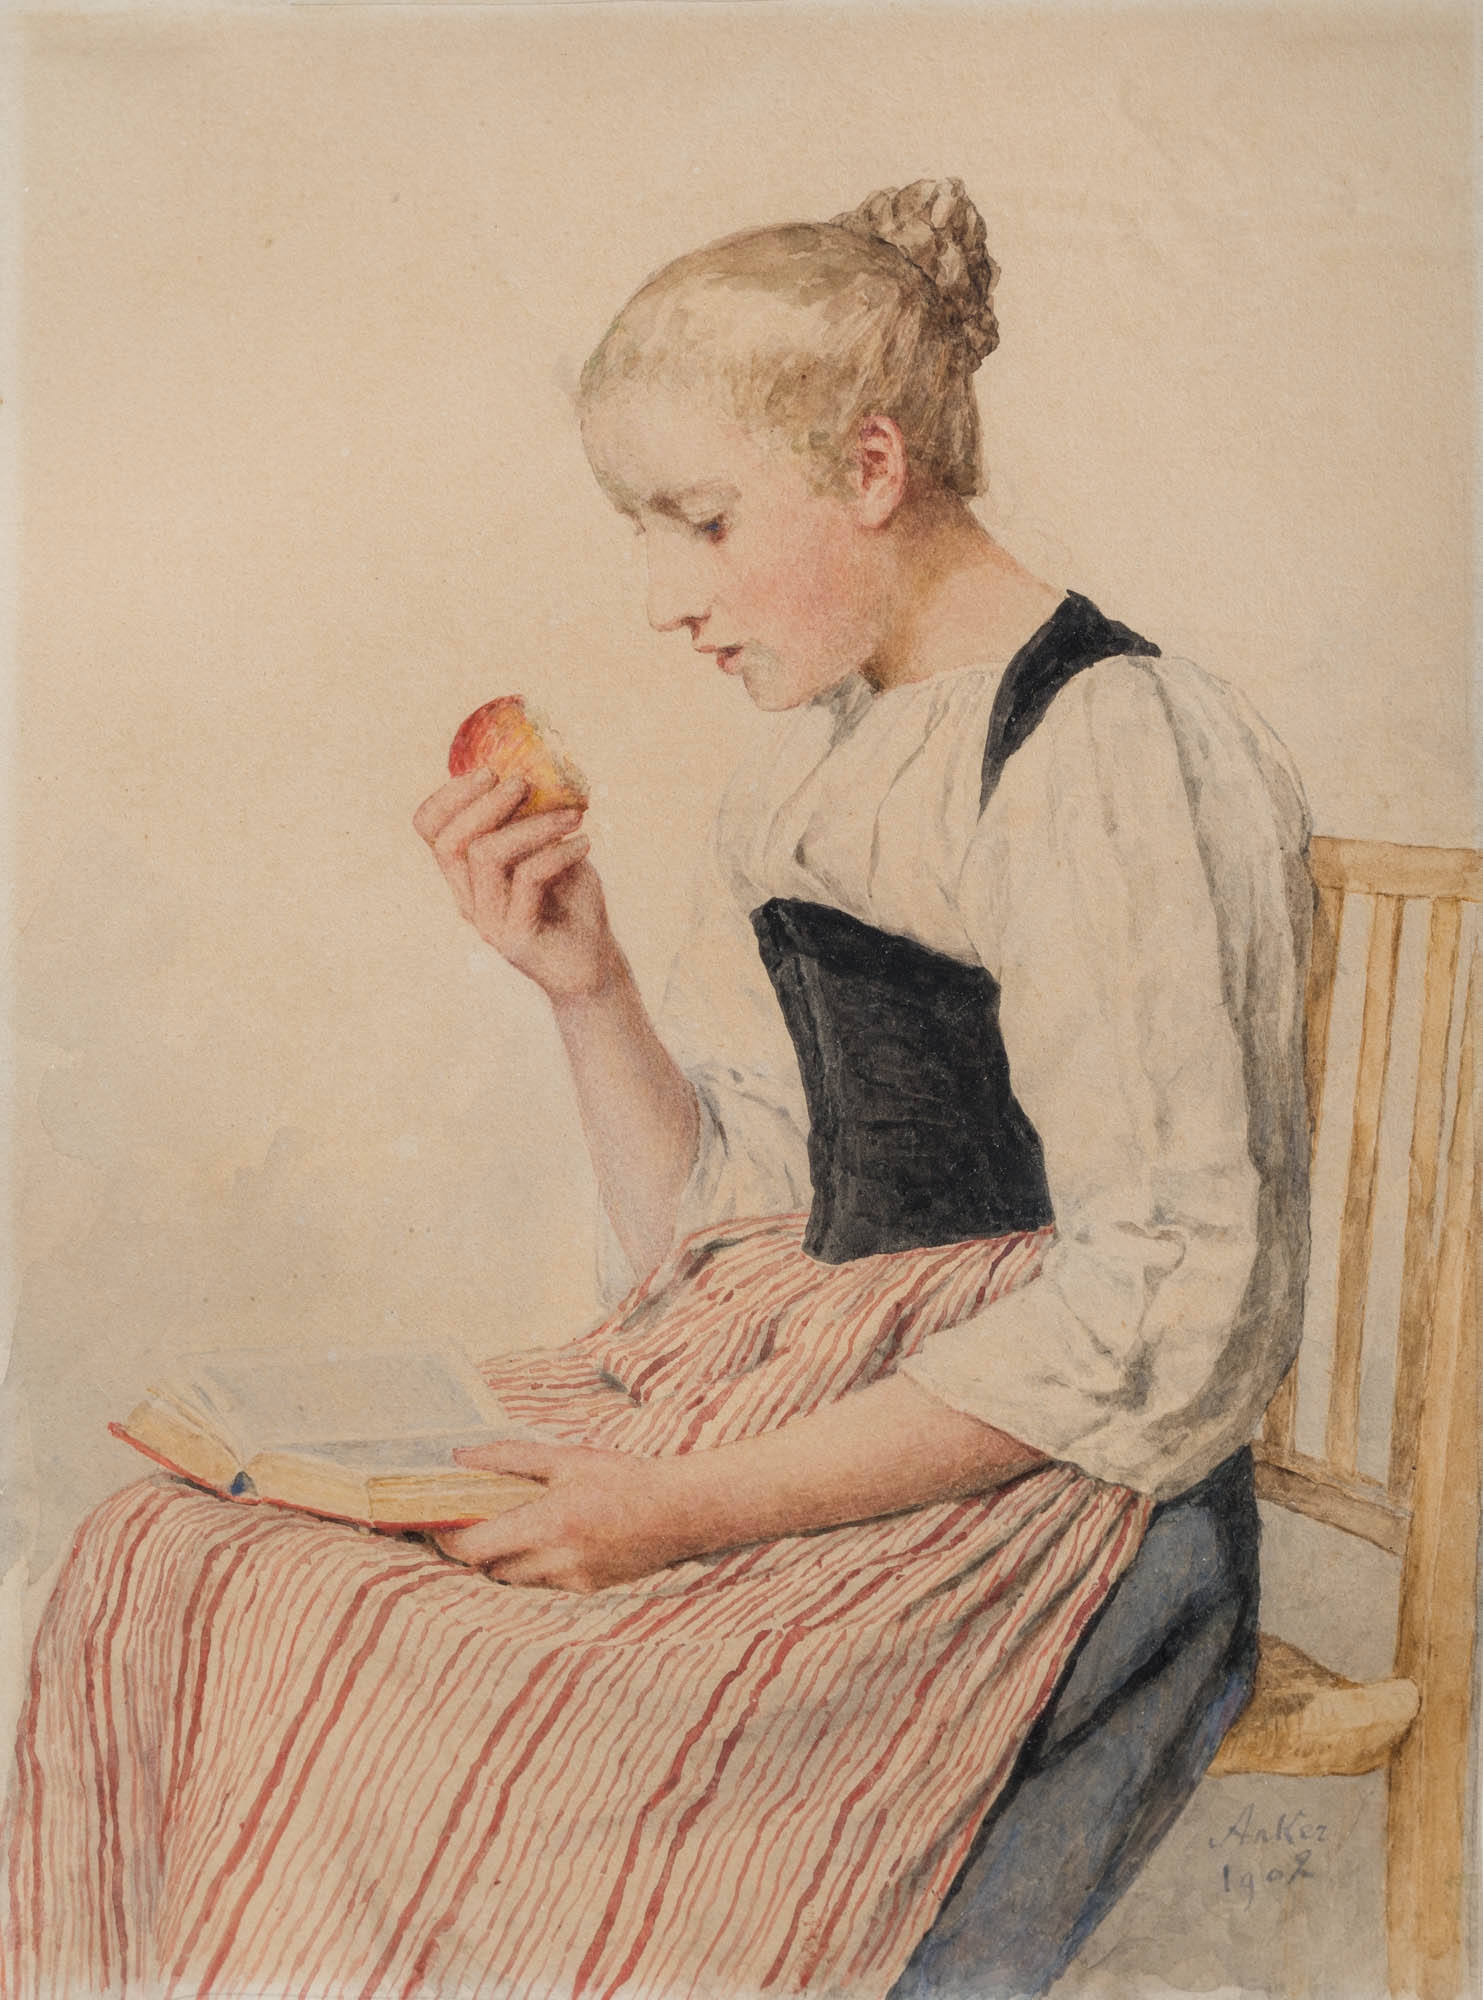 Lesendes Mädchen mit Apfel by Albert Anker, 1902